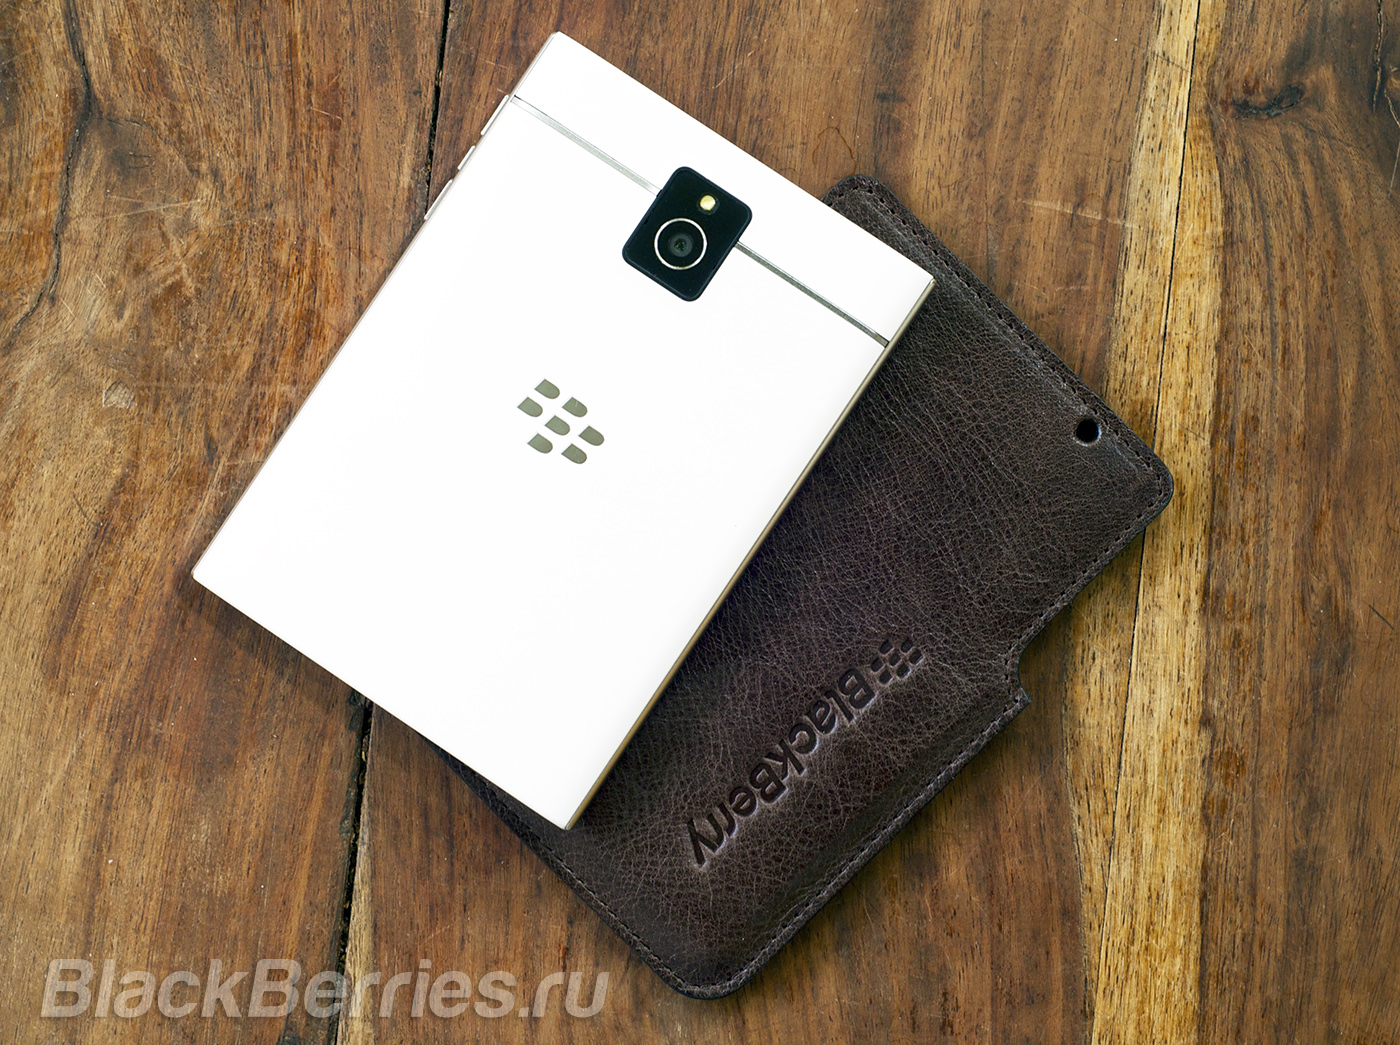 BlackBerry-Passport-Case-02